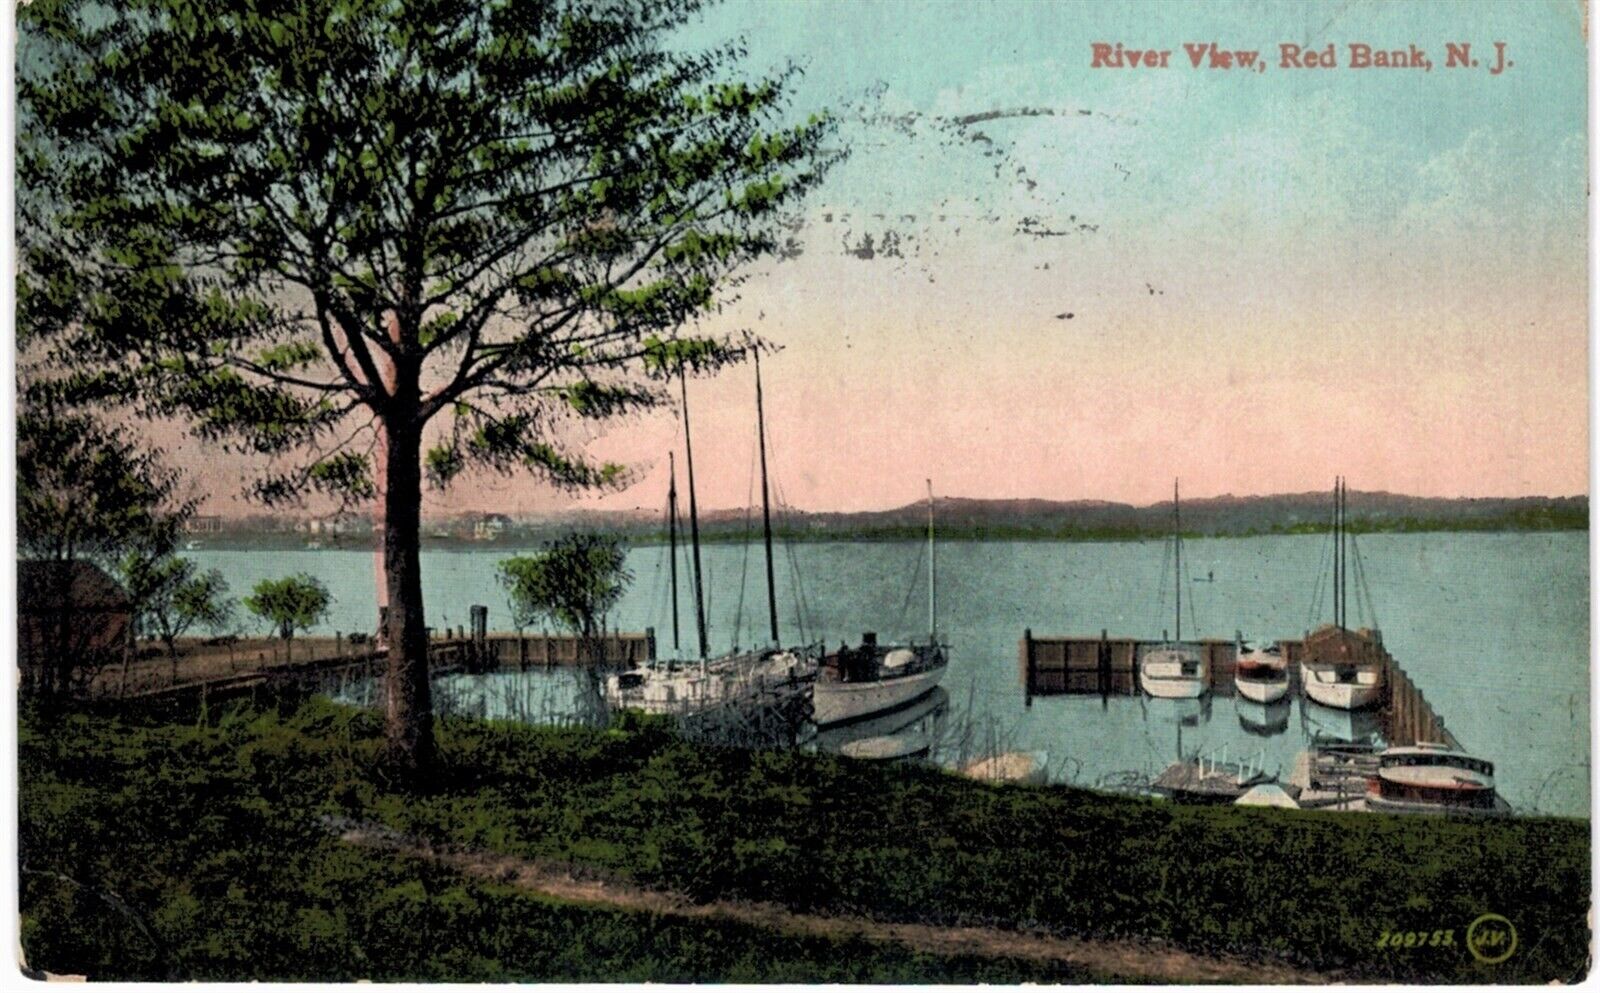 Red Bank River View Sailboats at Dock 1911 NJ 